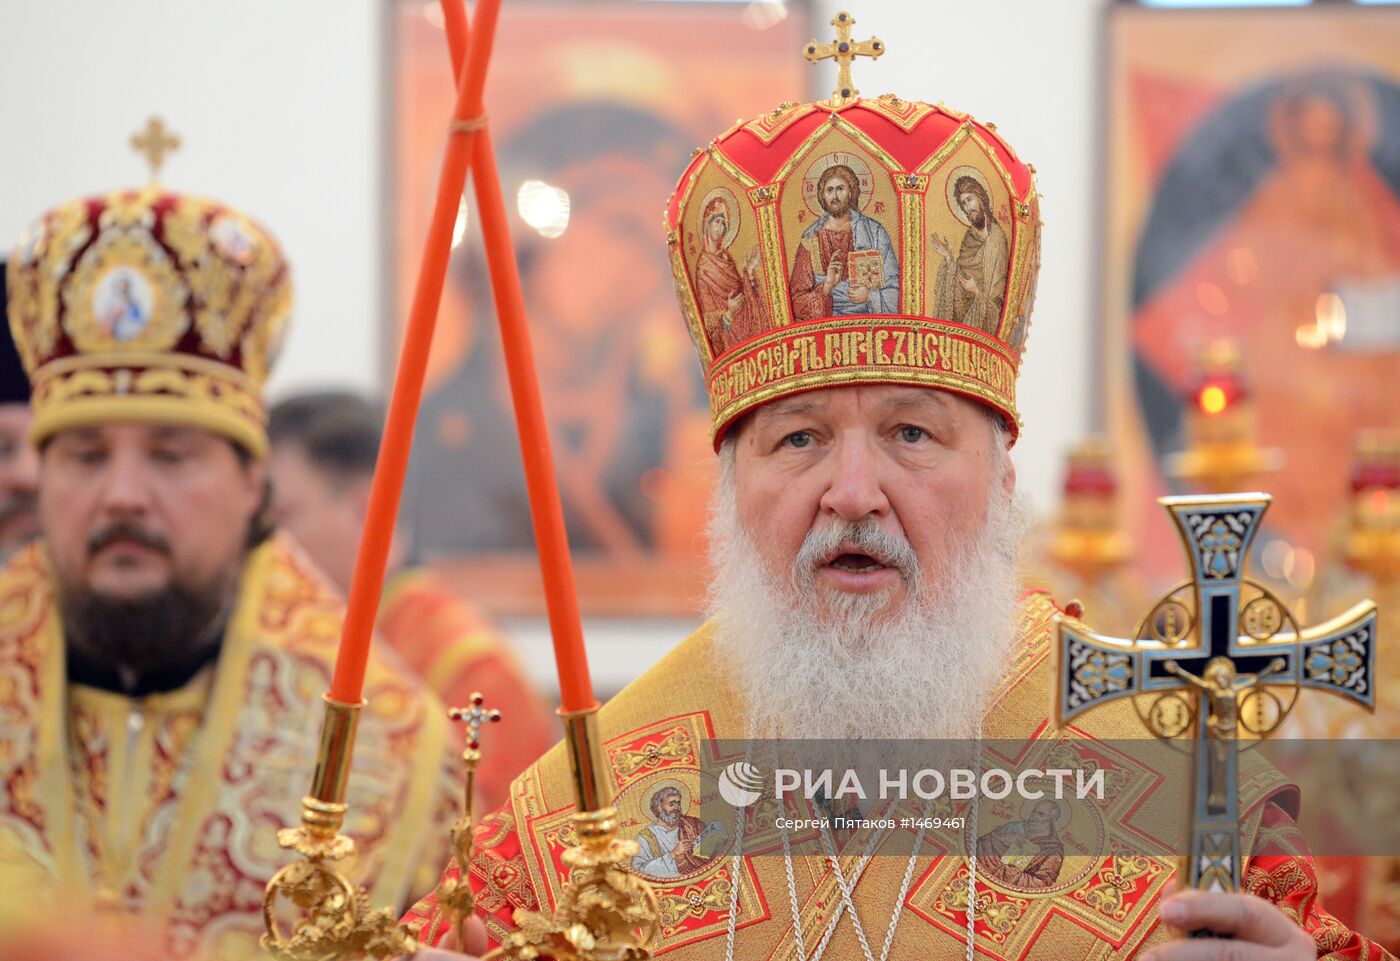 Завершение визита патриарха Кирилла в Китай